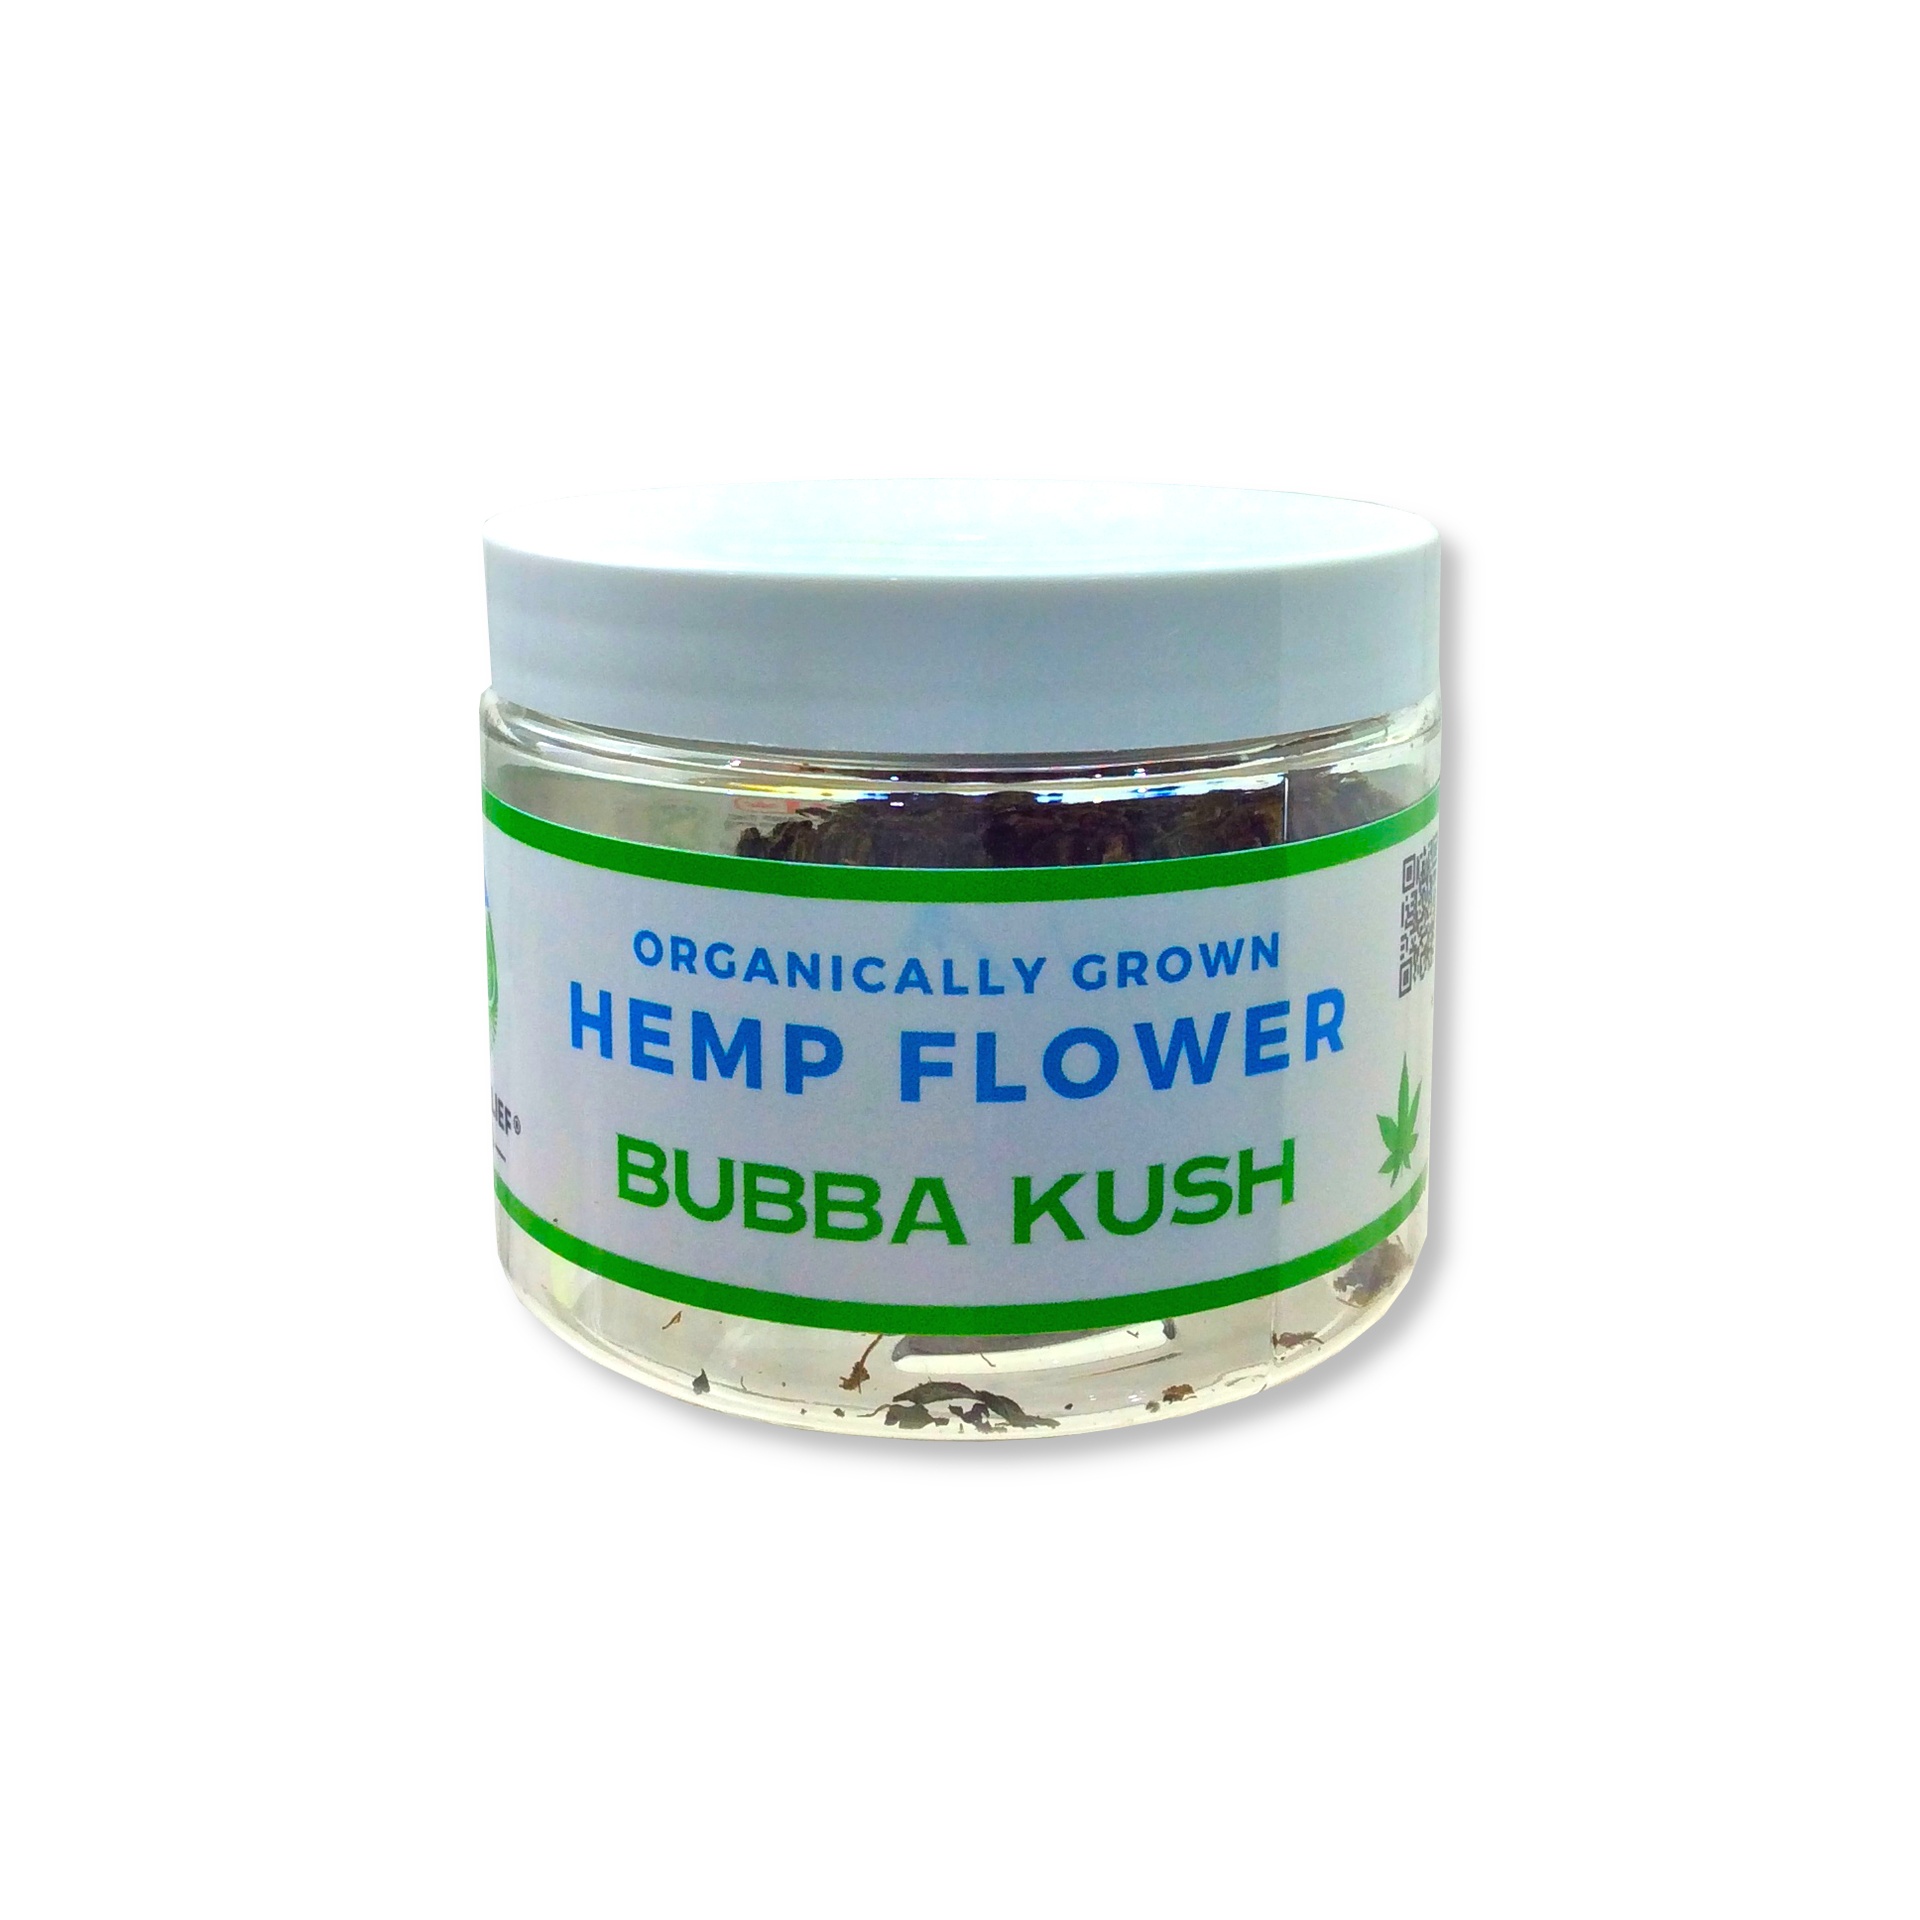 Deep Relief Organically Grown Hemp Flower 7g (Bubba Kush)